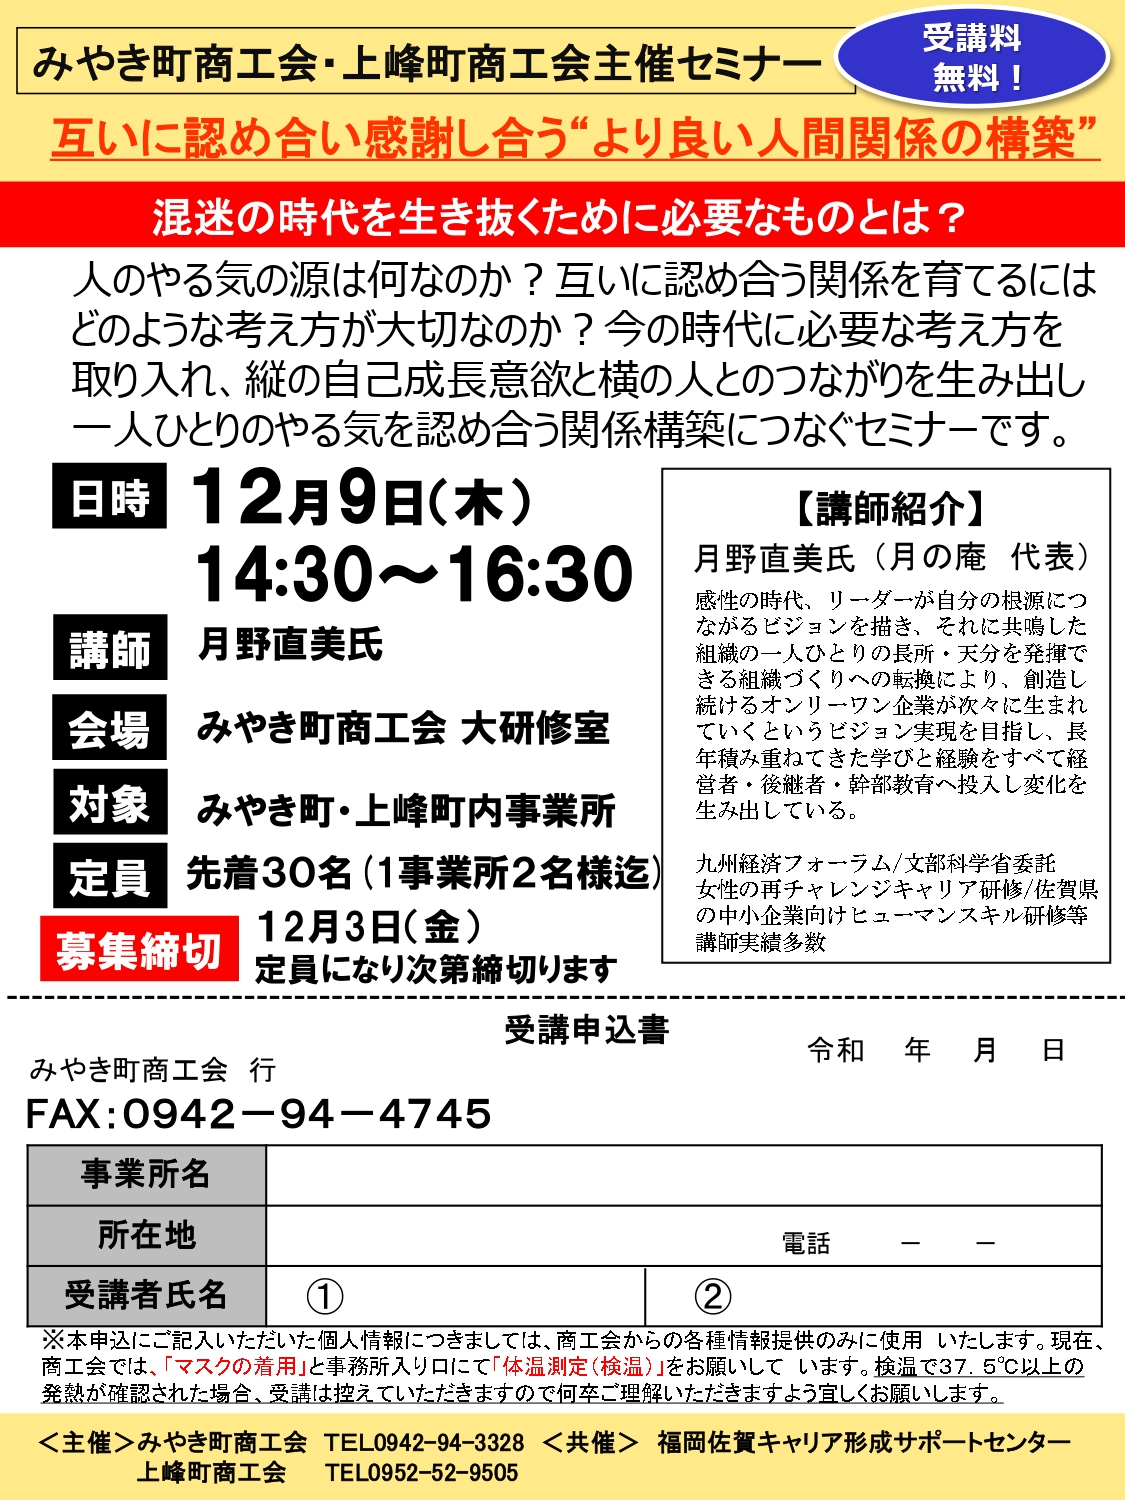 【12月9日】「みやき町・上峰町商工会主催セミナー」の開催について